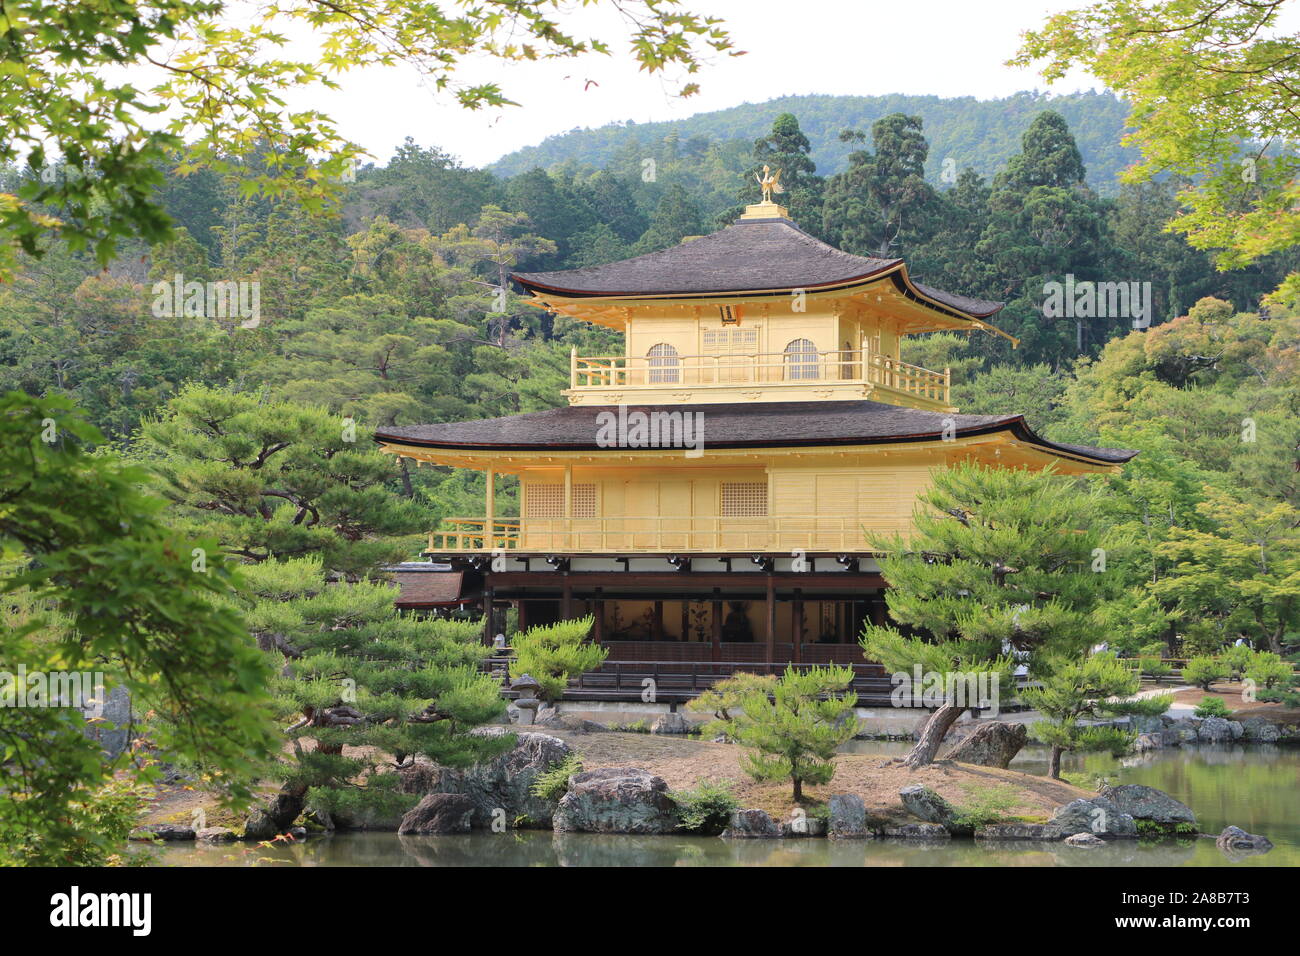 Kinkaku-ji Temple (The Golden Pavilion) Stock Photo